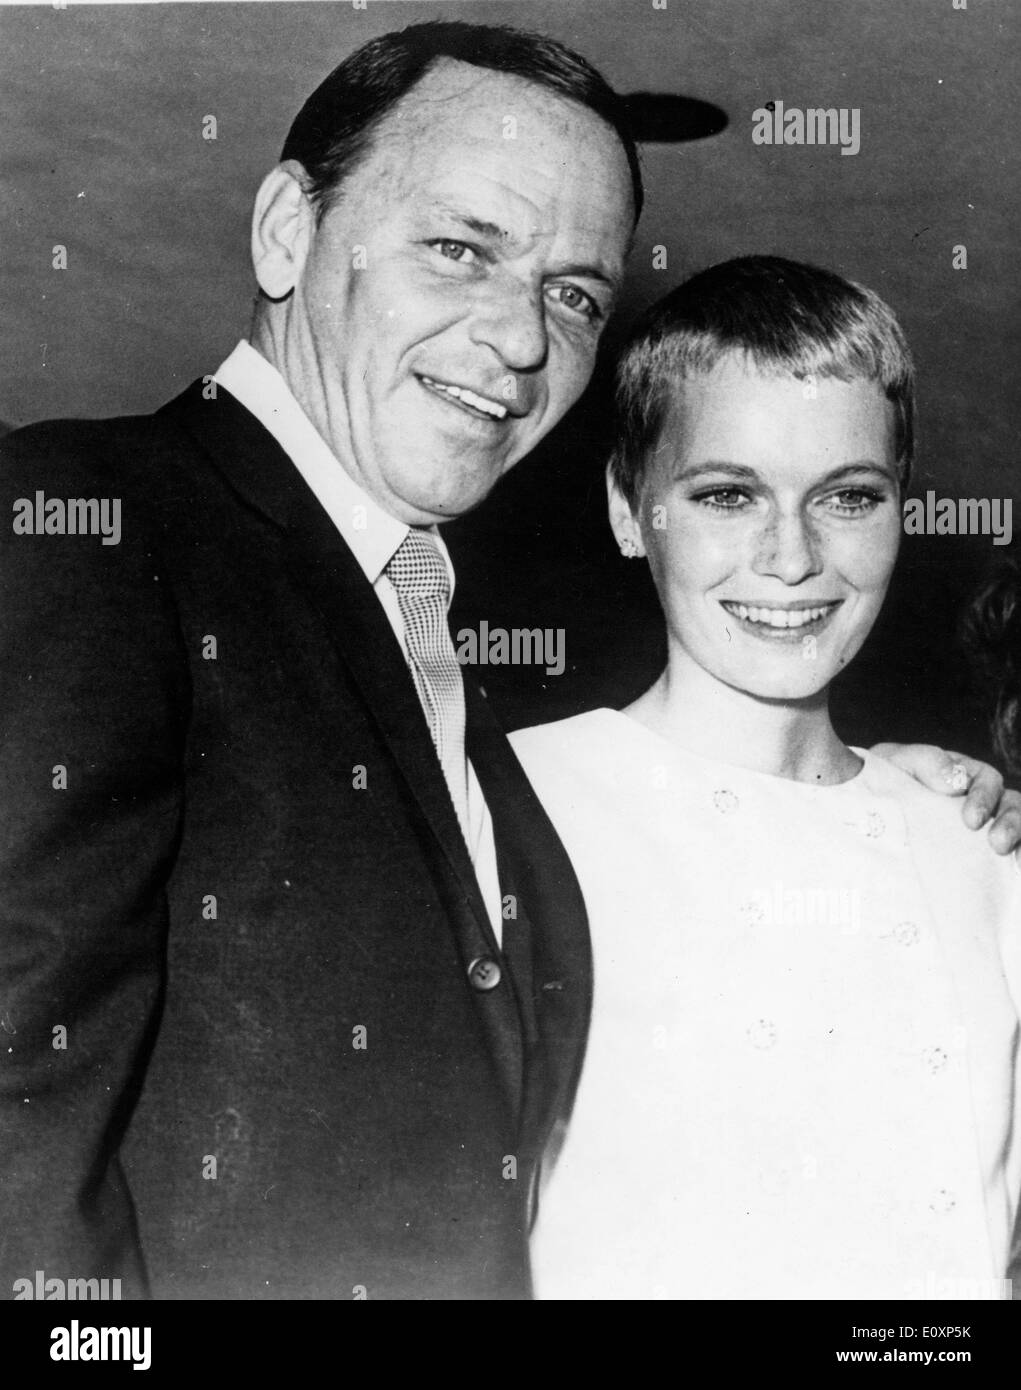 Frank Sinatra and Mia Farrow at their wedding in Vegas Stock Photo